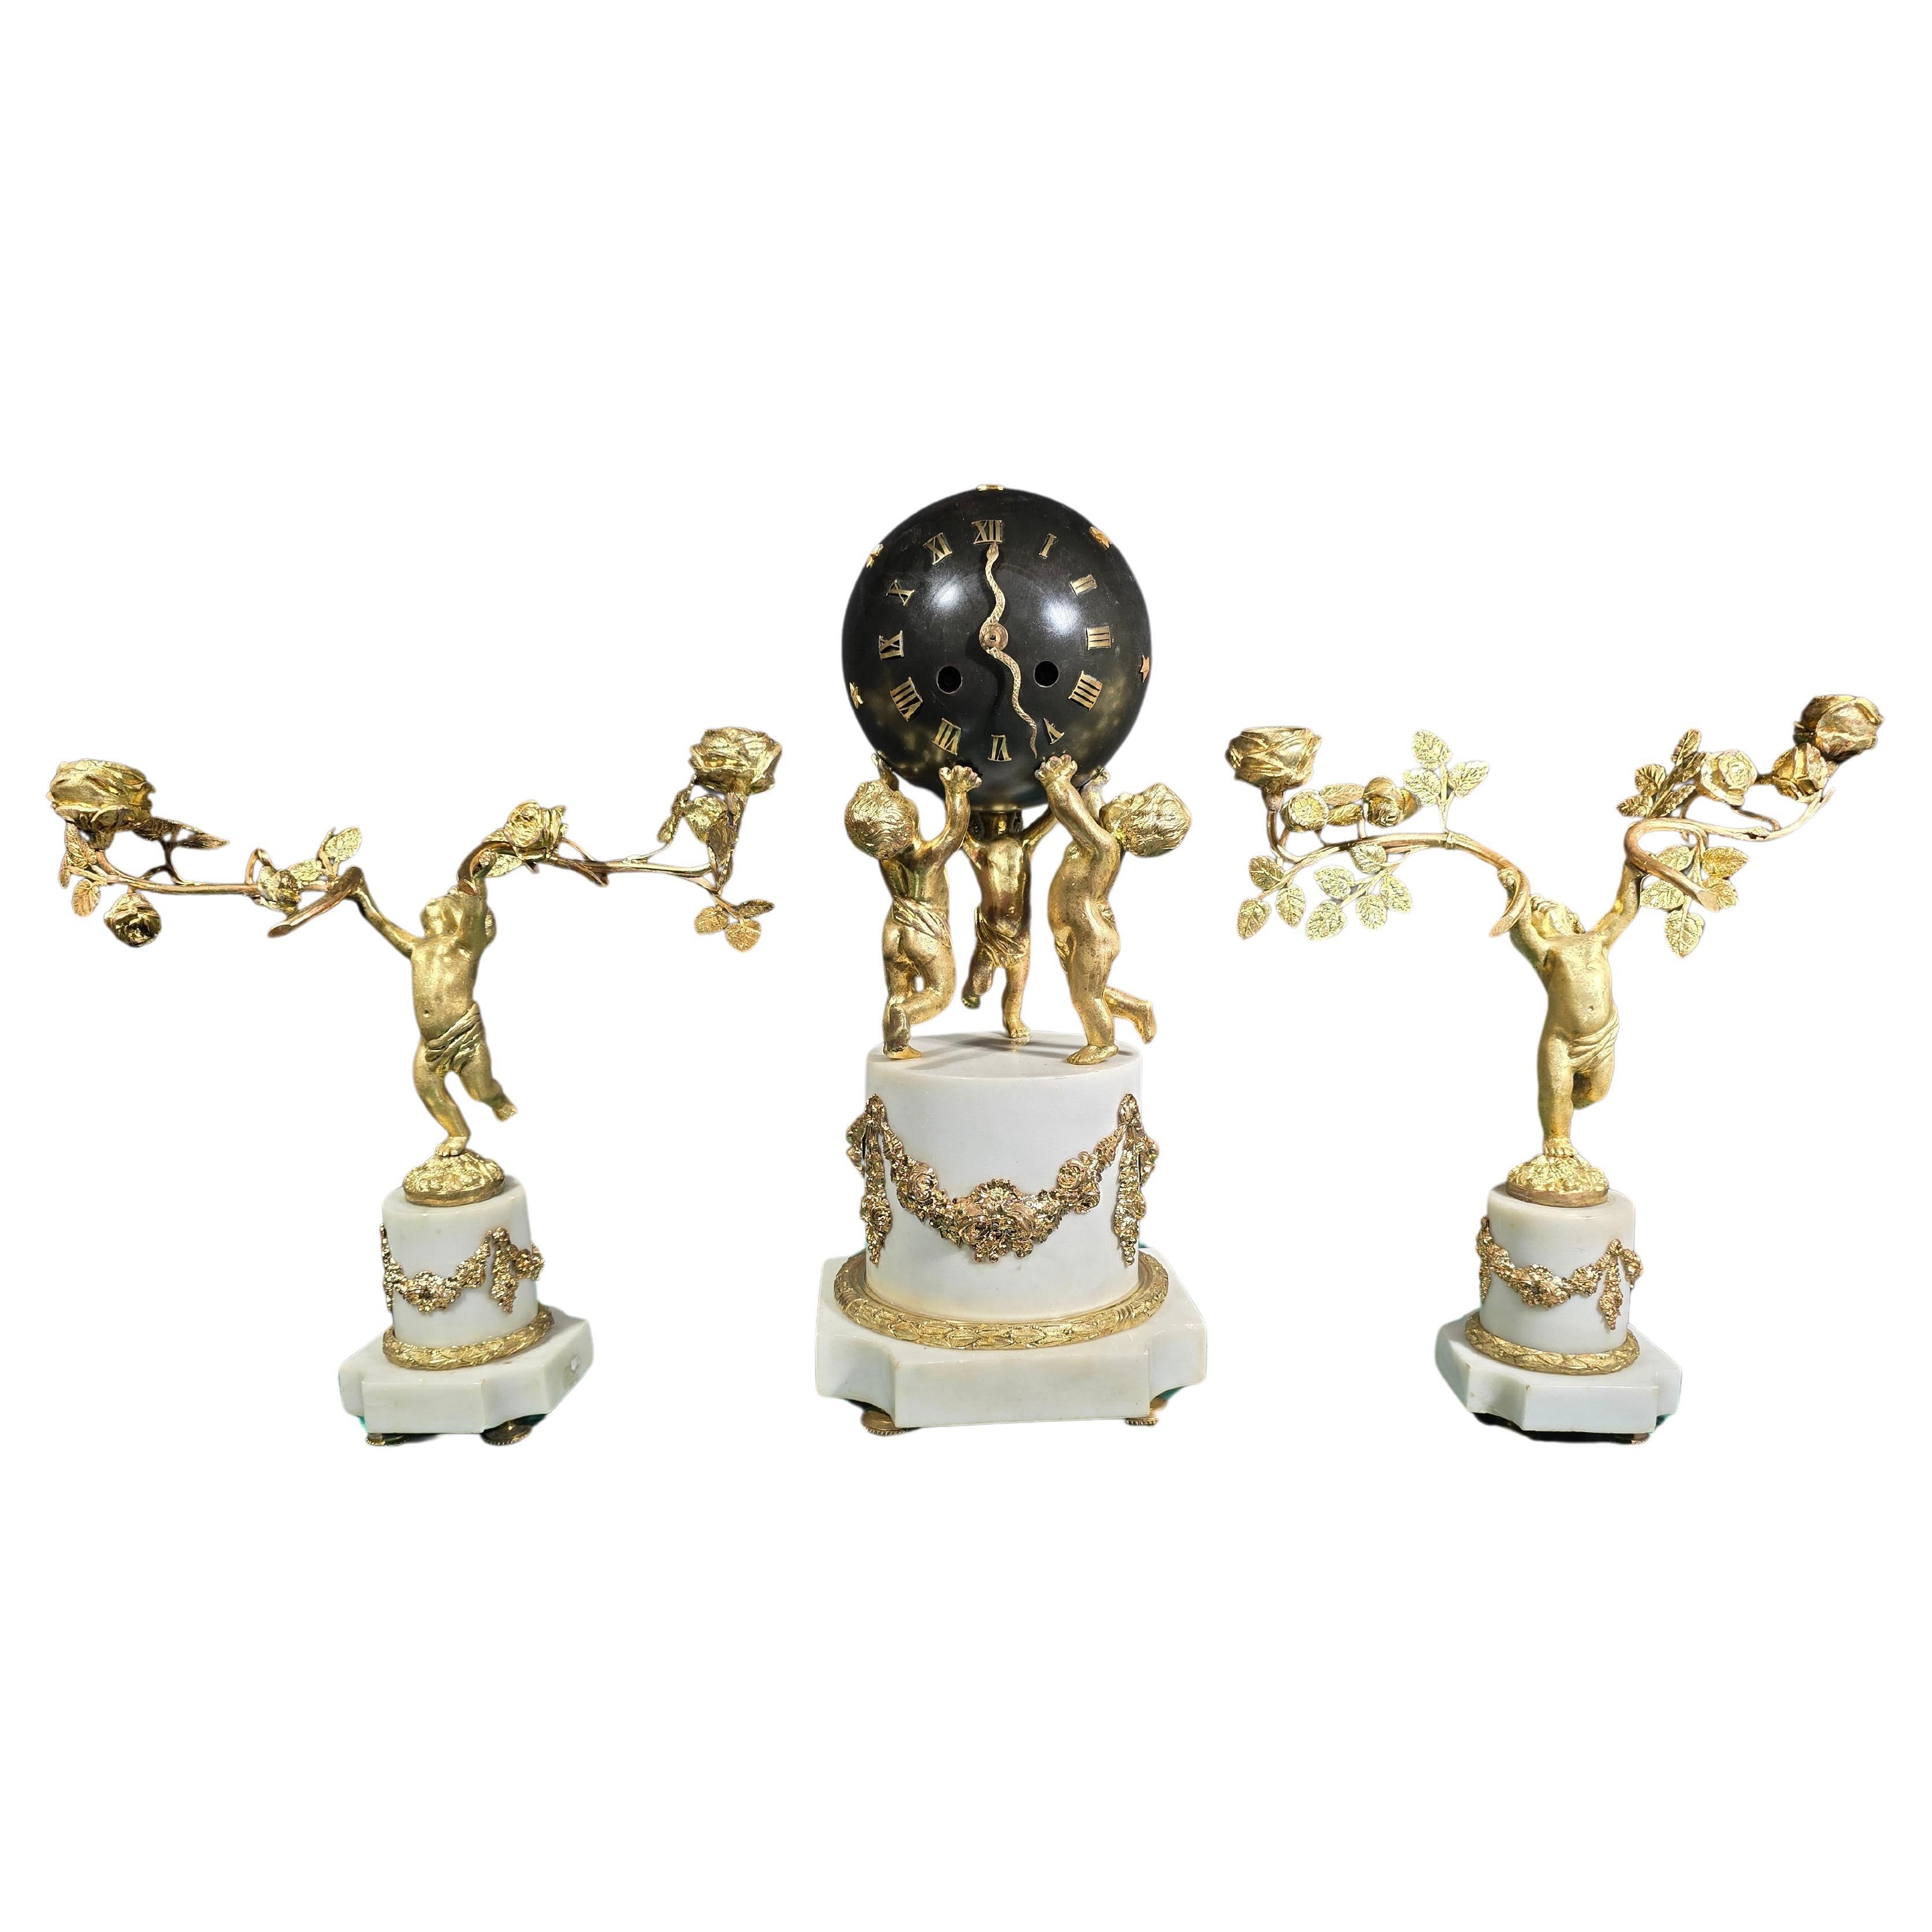 Ensemble de pendules à garniture en bronze doré du 19e siècle